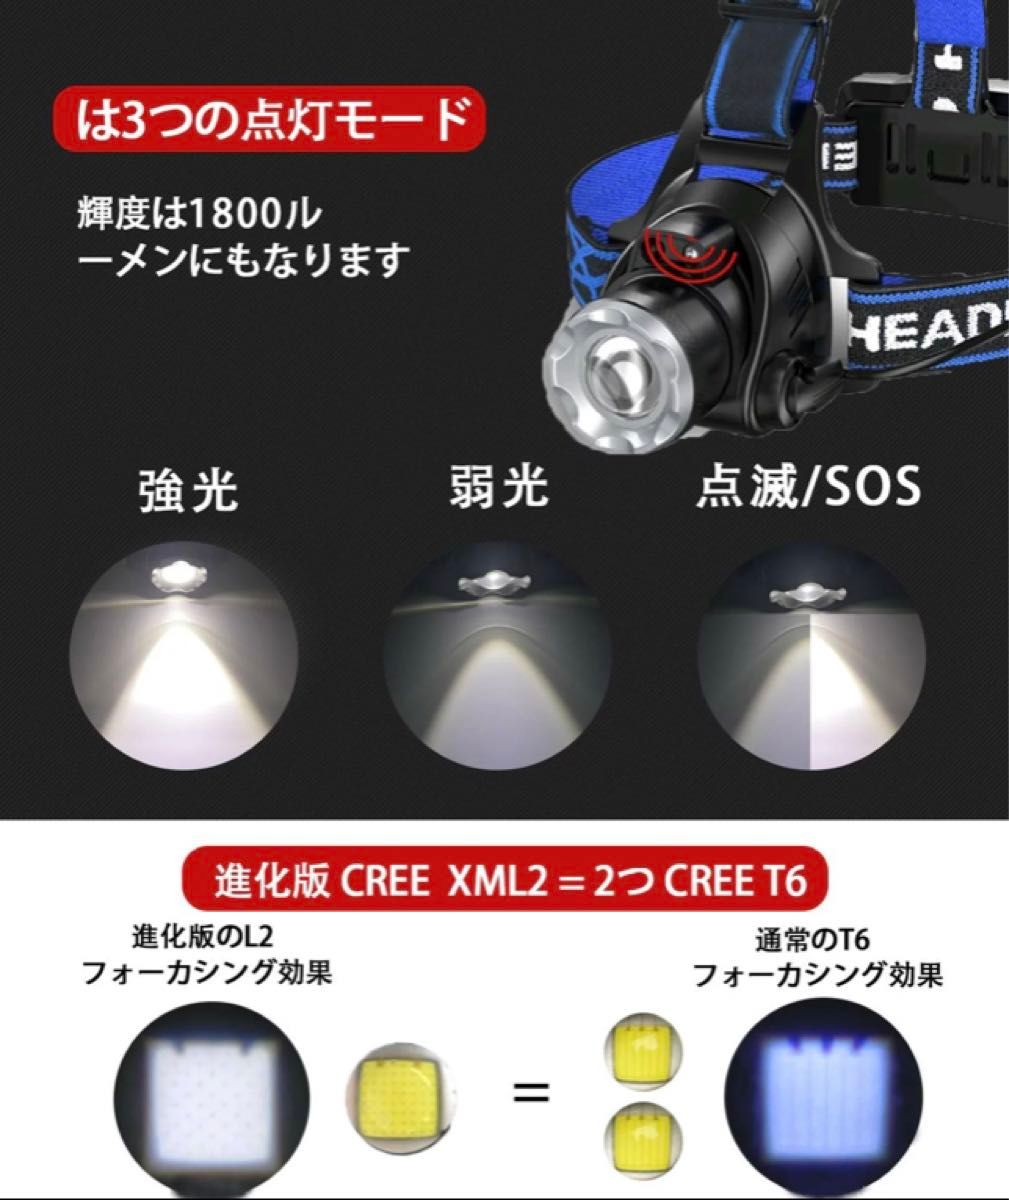 LEDヘッドライト 充電式 高輝度 ヘッドランプ 人感センサー 防水 防災 ヘルメット ライト IPX6防水 